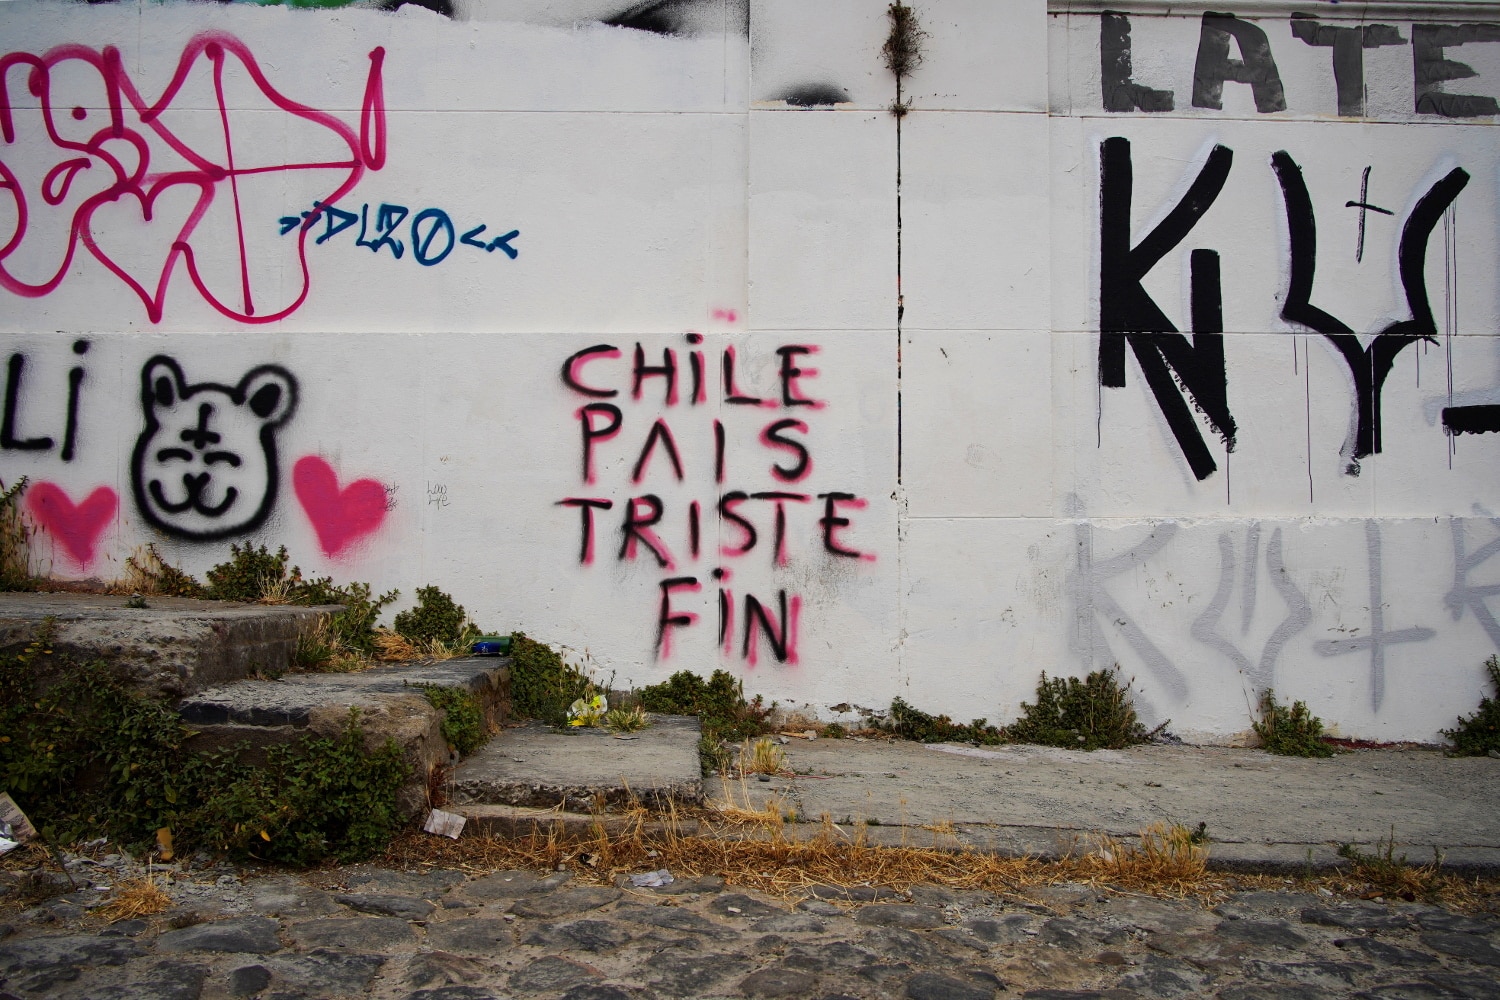 Un tag sur un mur qui porte l'inscription "Chile país triste" (Chili pays trsite)